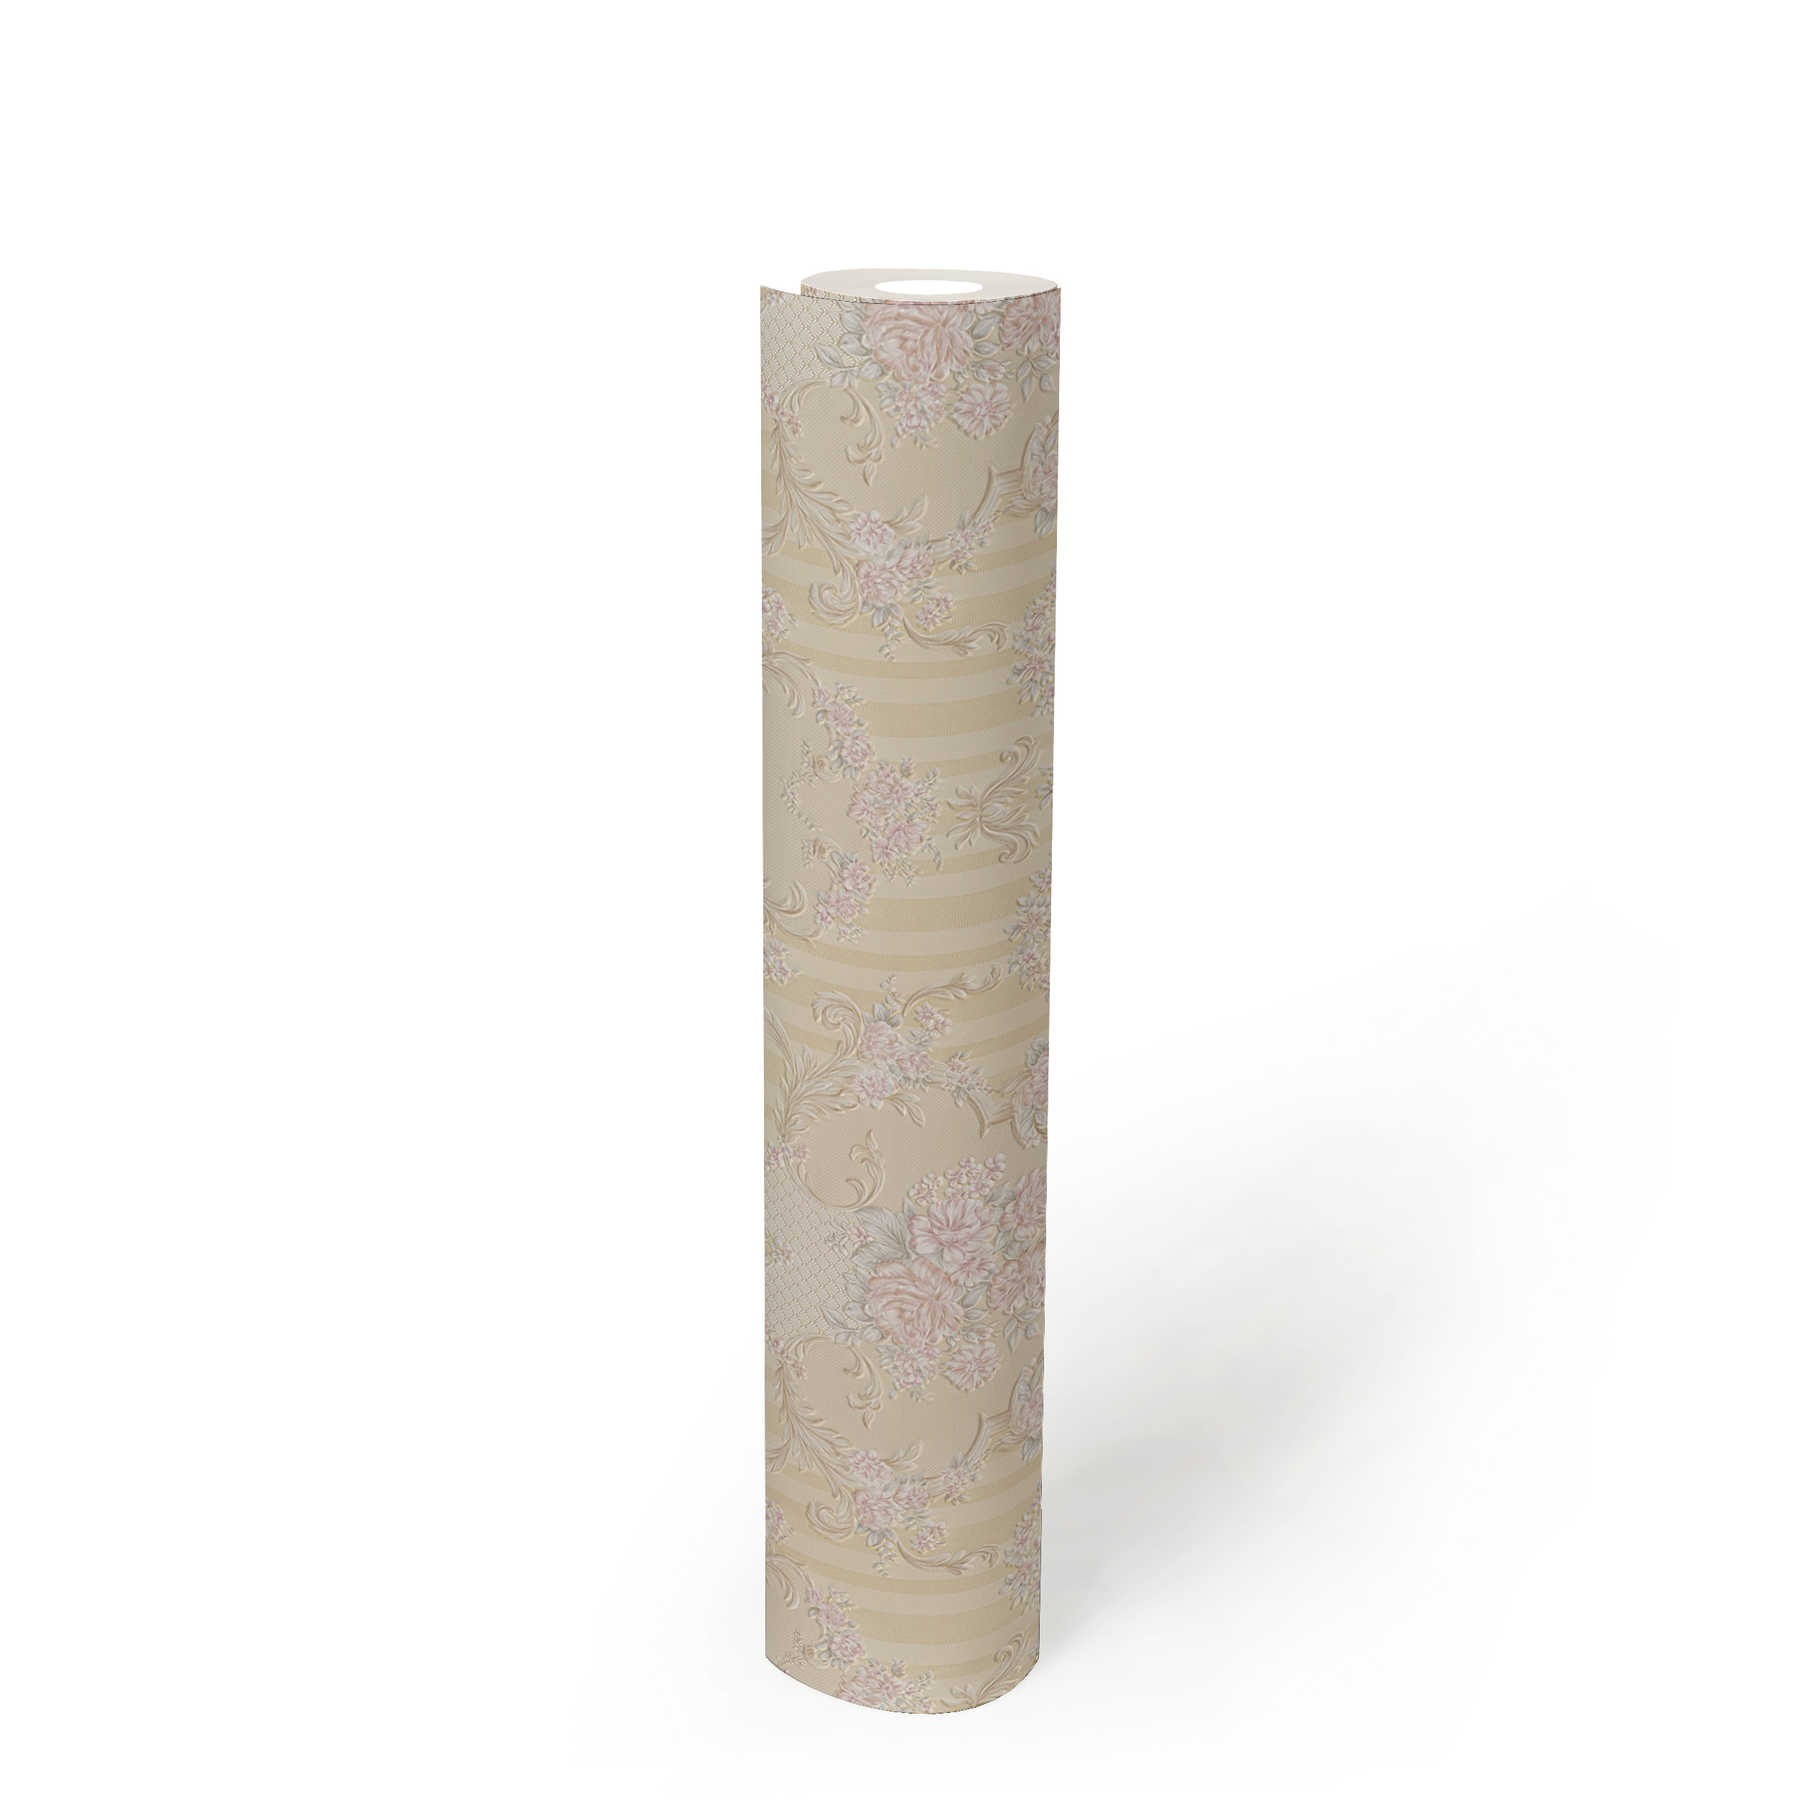             Neobarock Tapete mit Rosen-Ornamenten & Streifen – Beige, Metallic
        